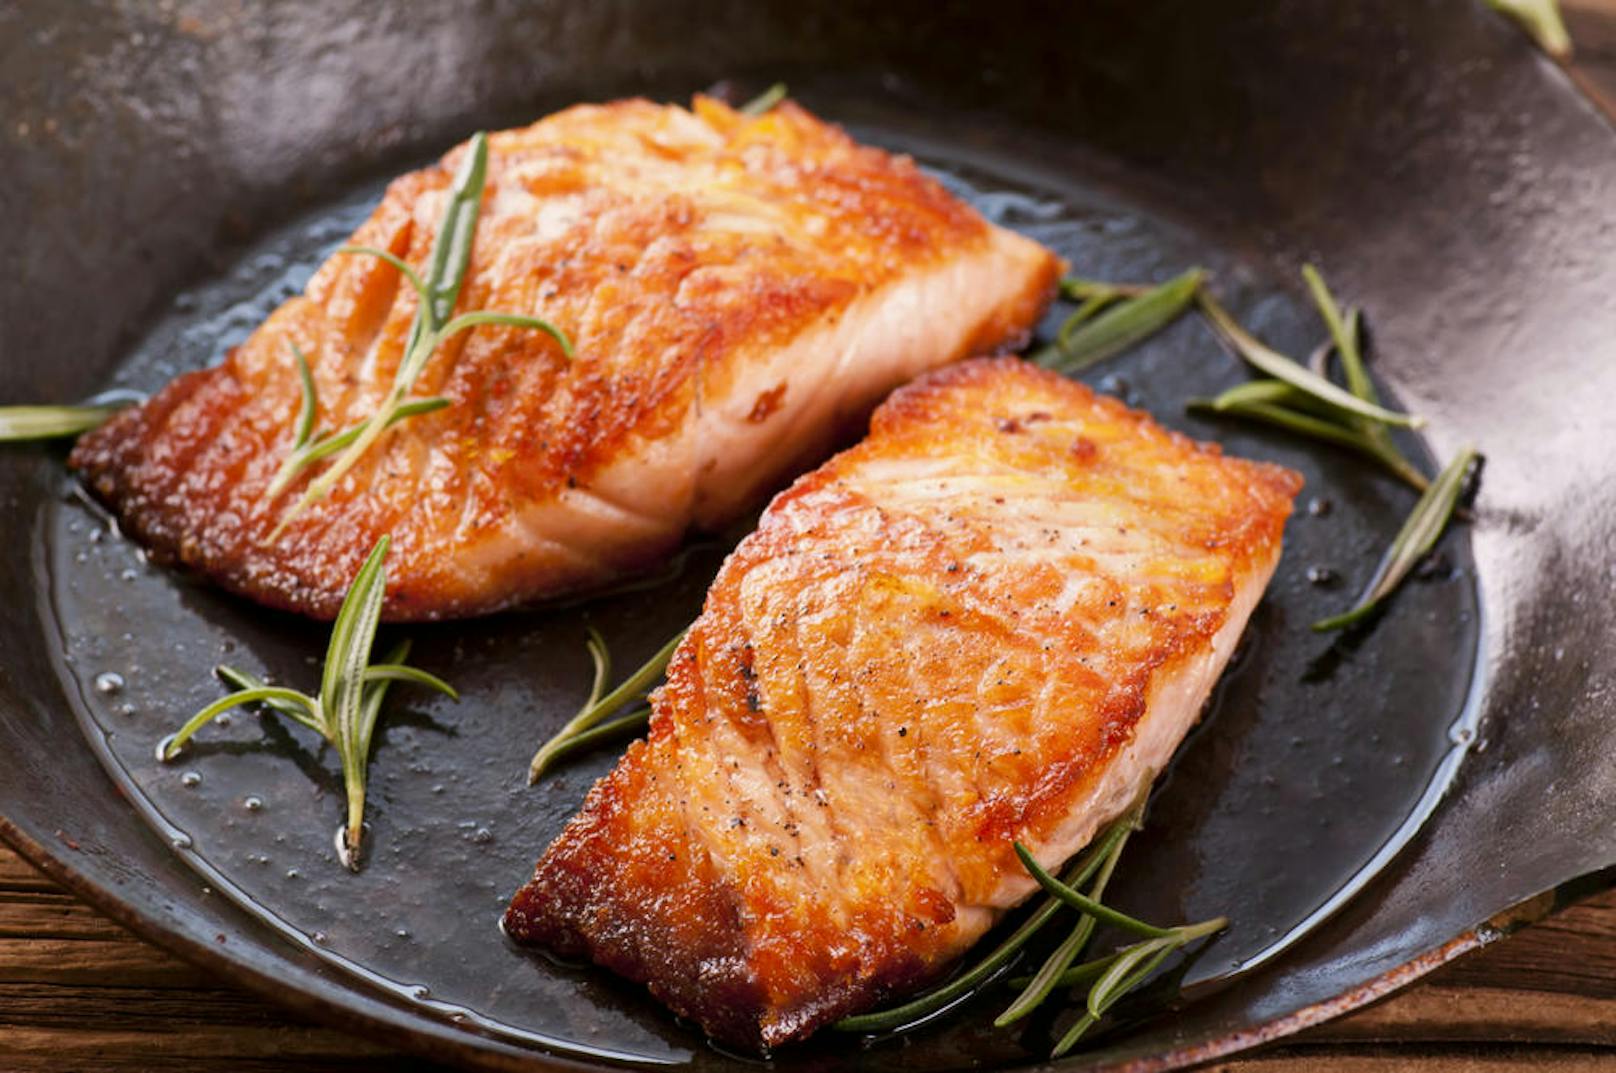 Fisch zählt genauso wie Fleisch zu den schnell verderblichen Lebensmitteln. Fisch sollte immer im Kühlschrank gelagert und möglichst innerhalb von 24 Stunden verzehrt werden.